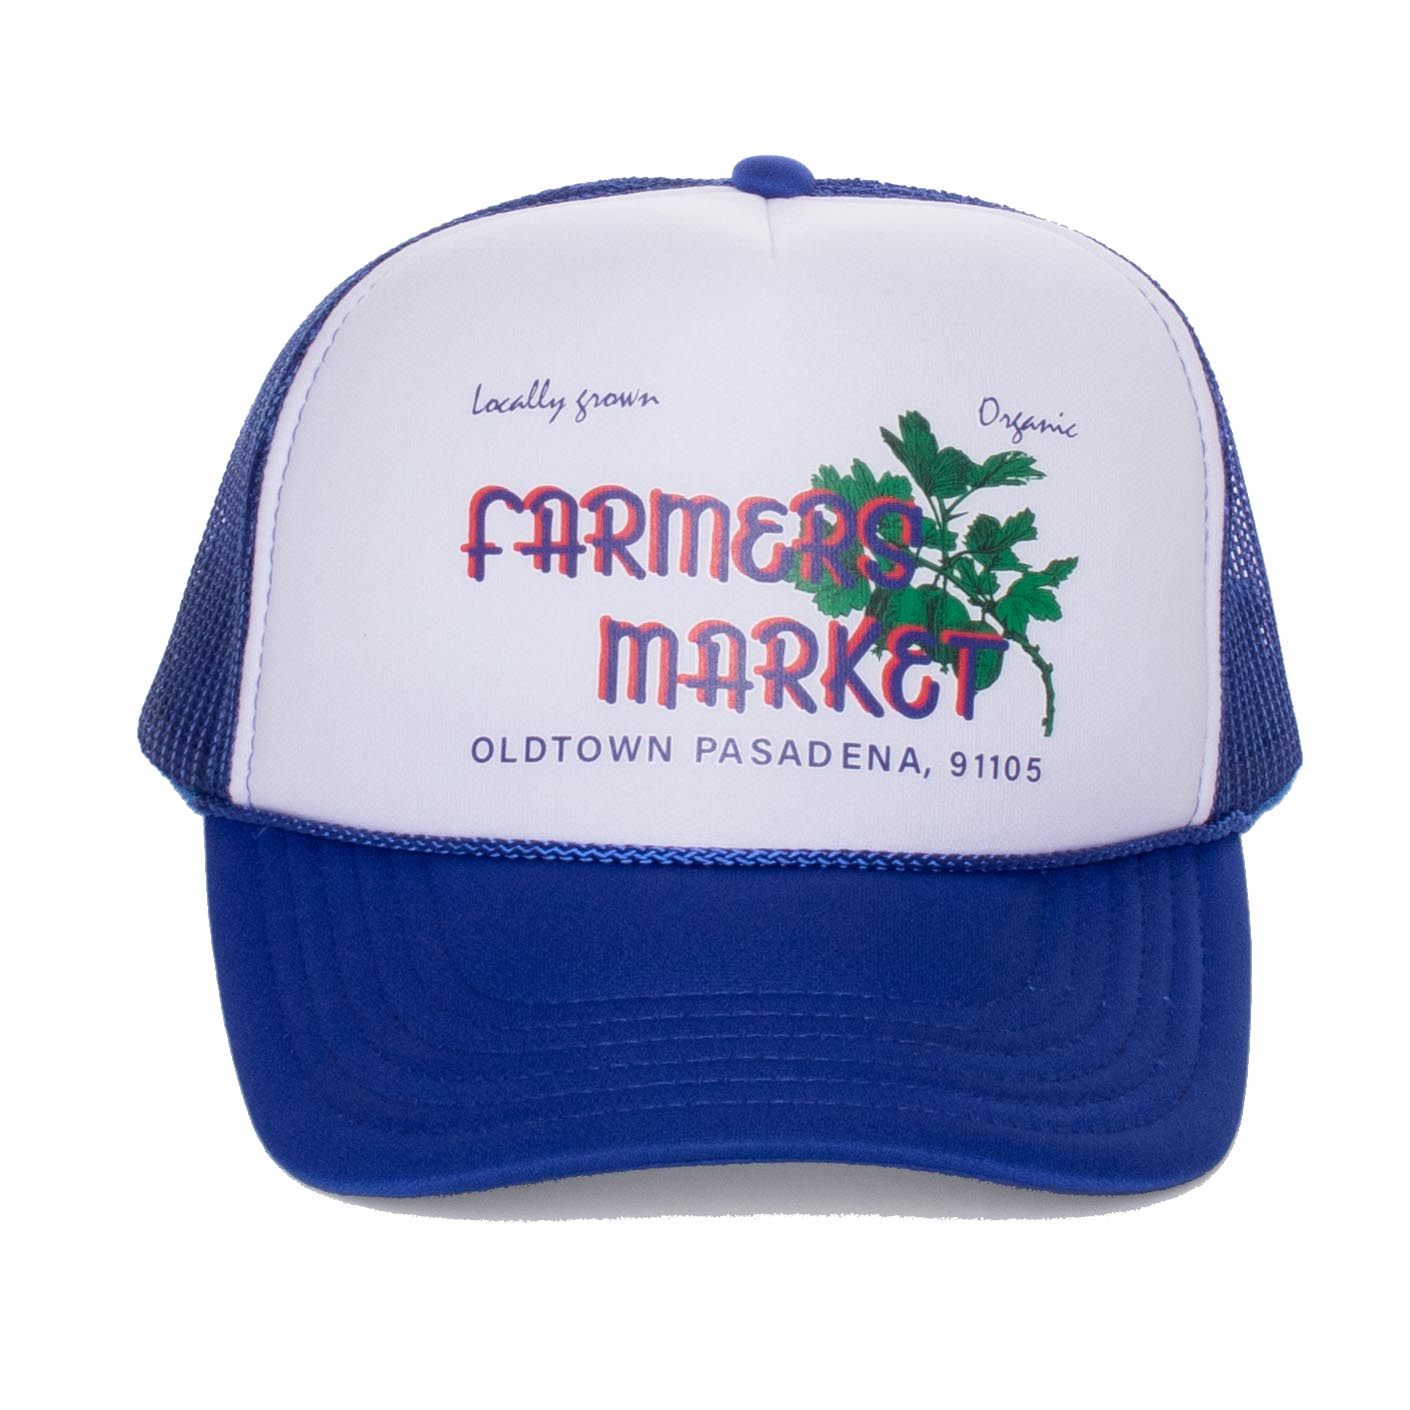 FARMERS MARKET Trucker Cap